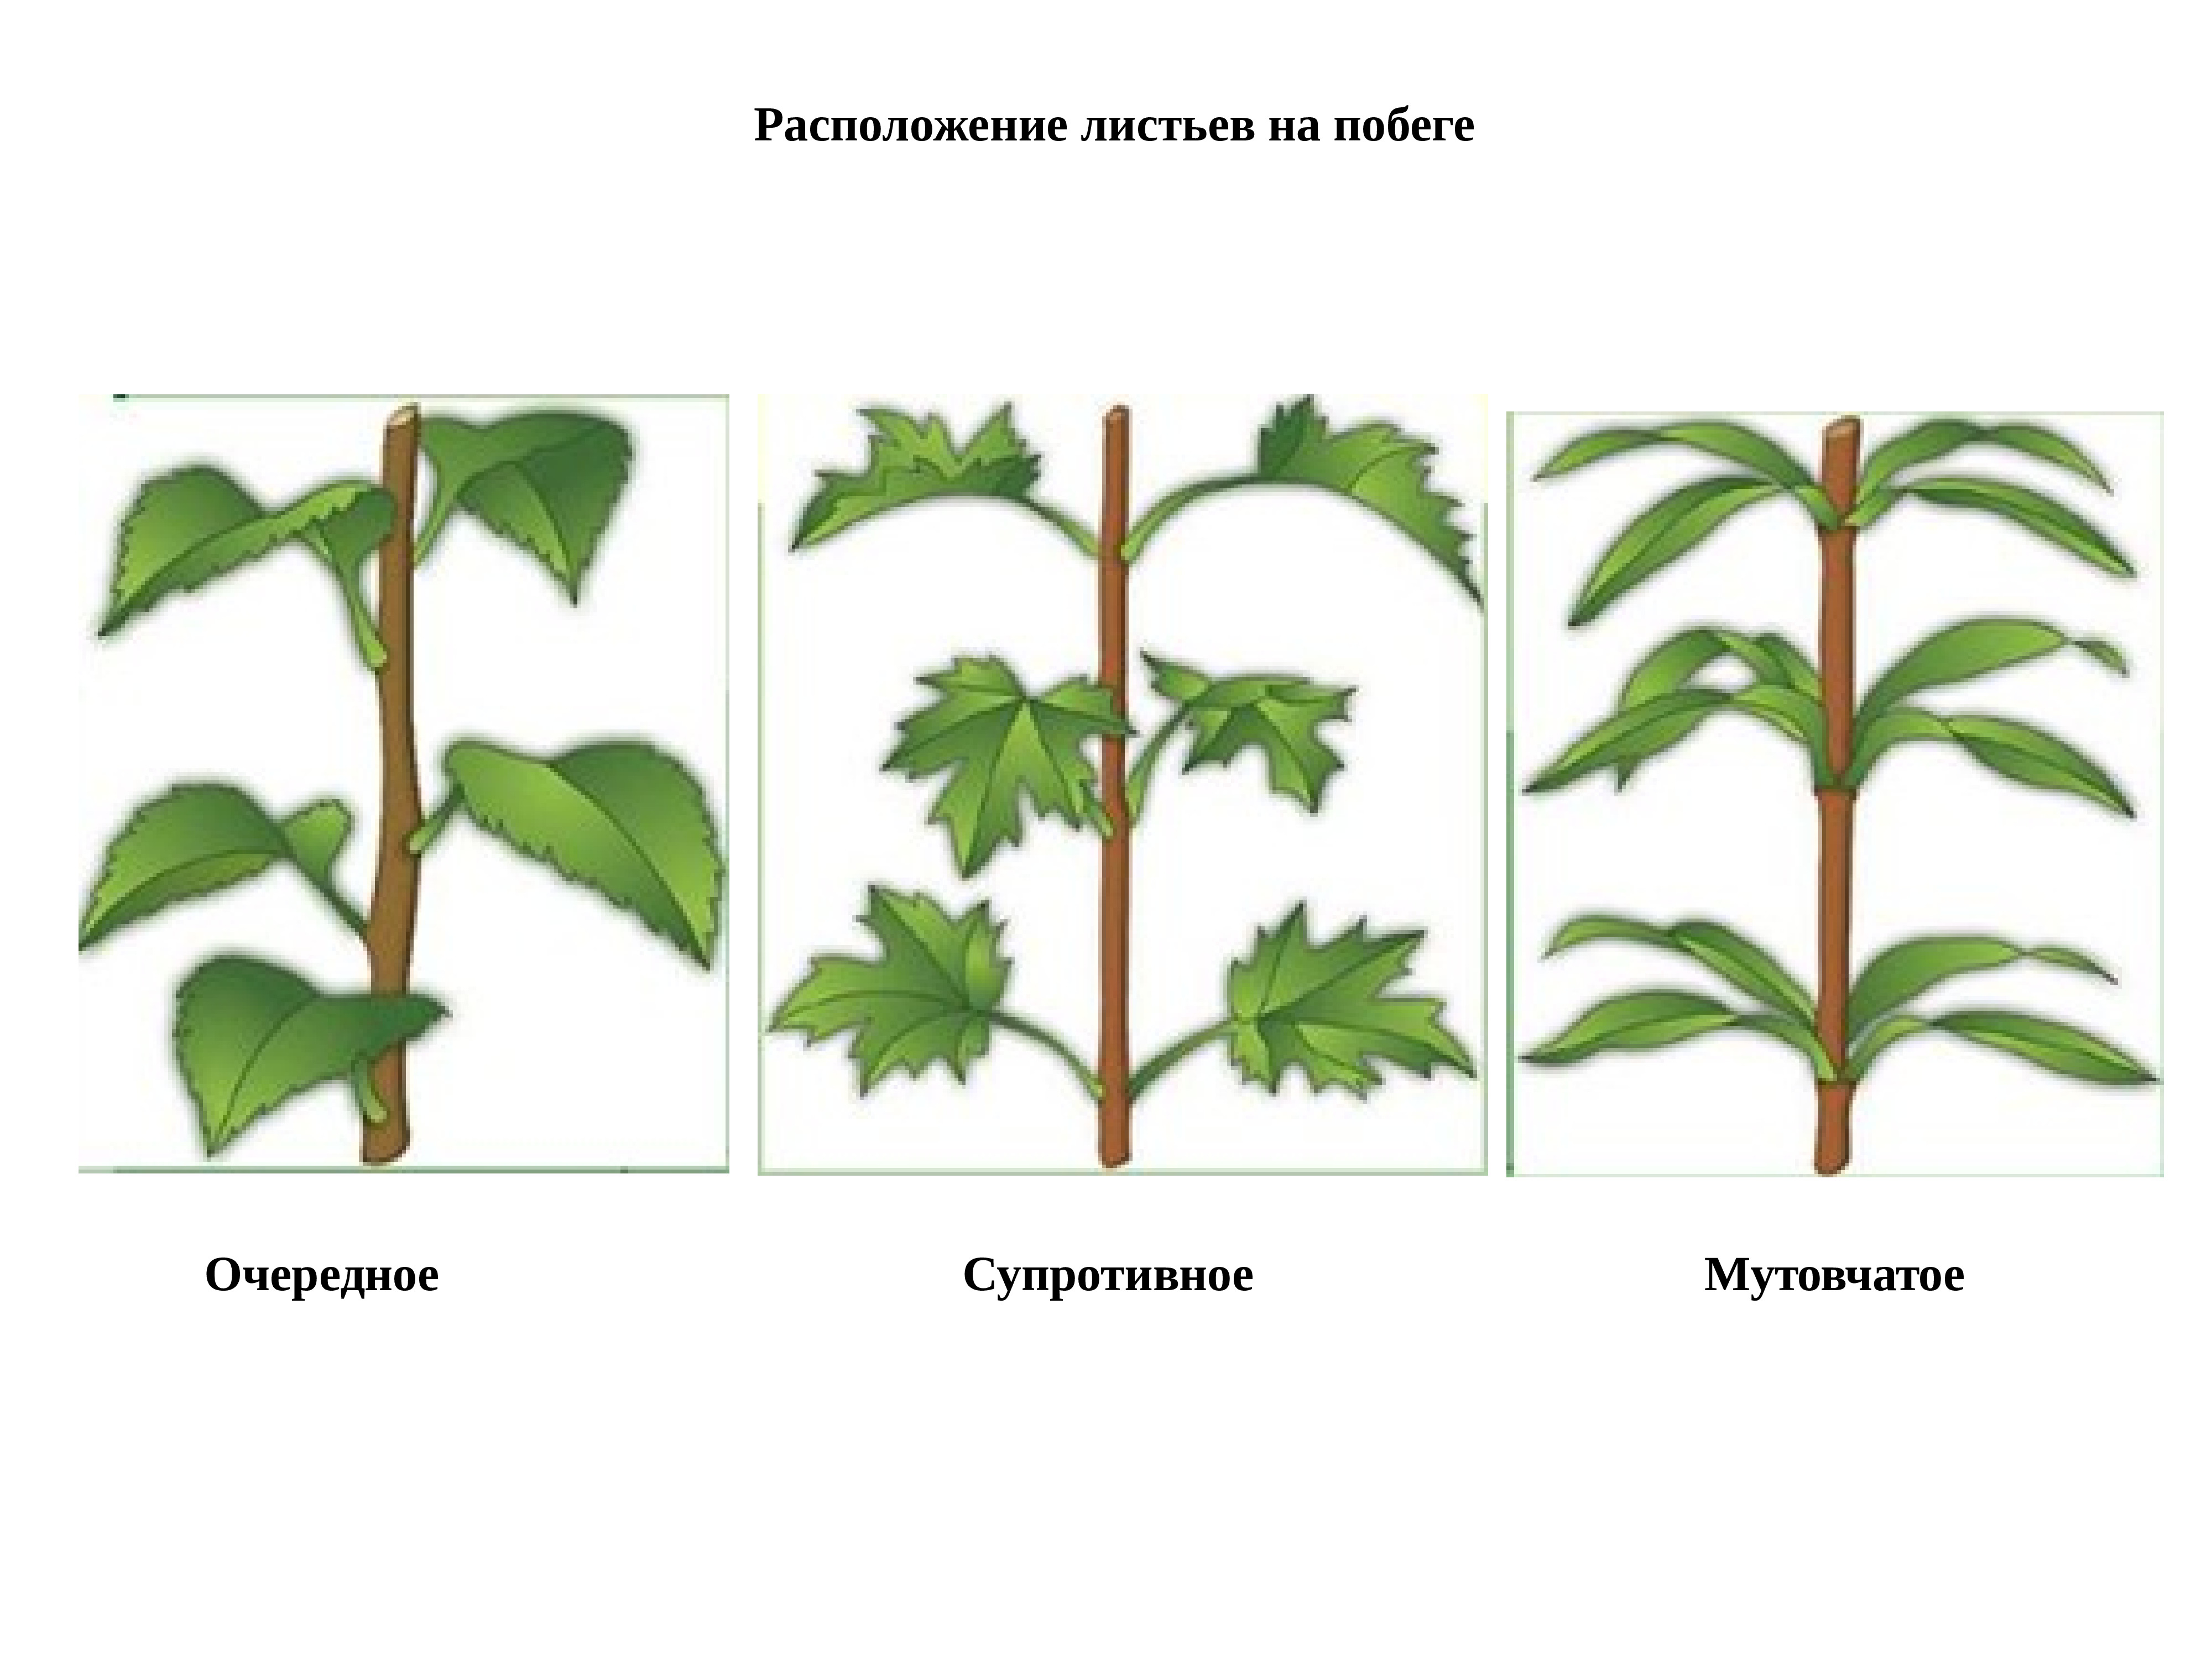 Отличительной особенностью растений является развитие на побегах. Мутовчатое супротивные расположения листа. Расположение листьев очередное супротивное мутовчатое. Очередное супротивное мутовчатое листорасположение. Типы листорасположения на побегах.